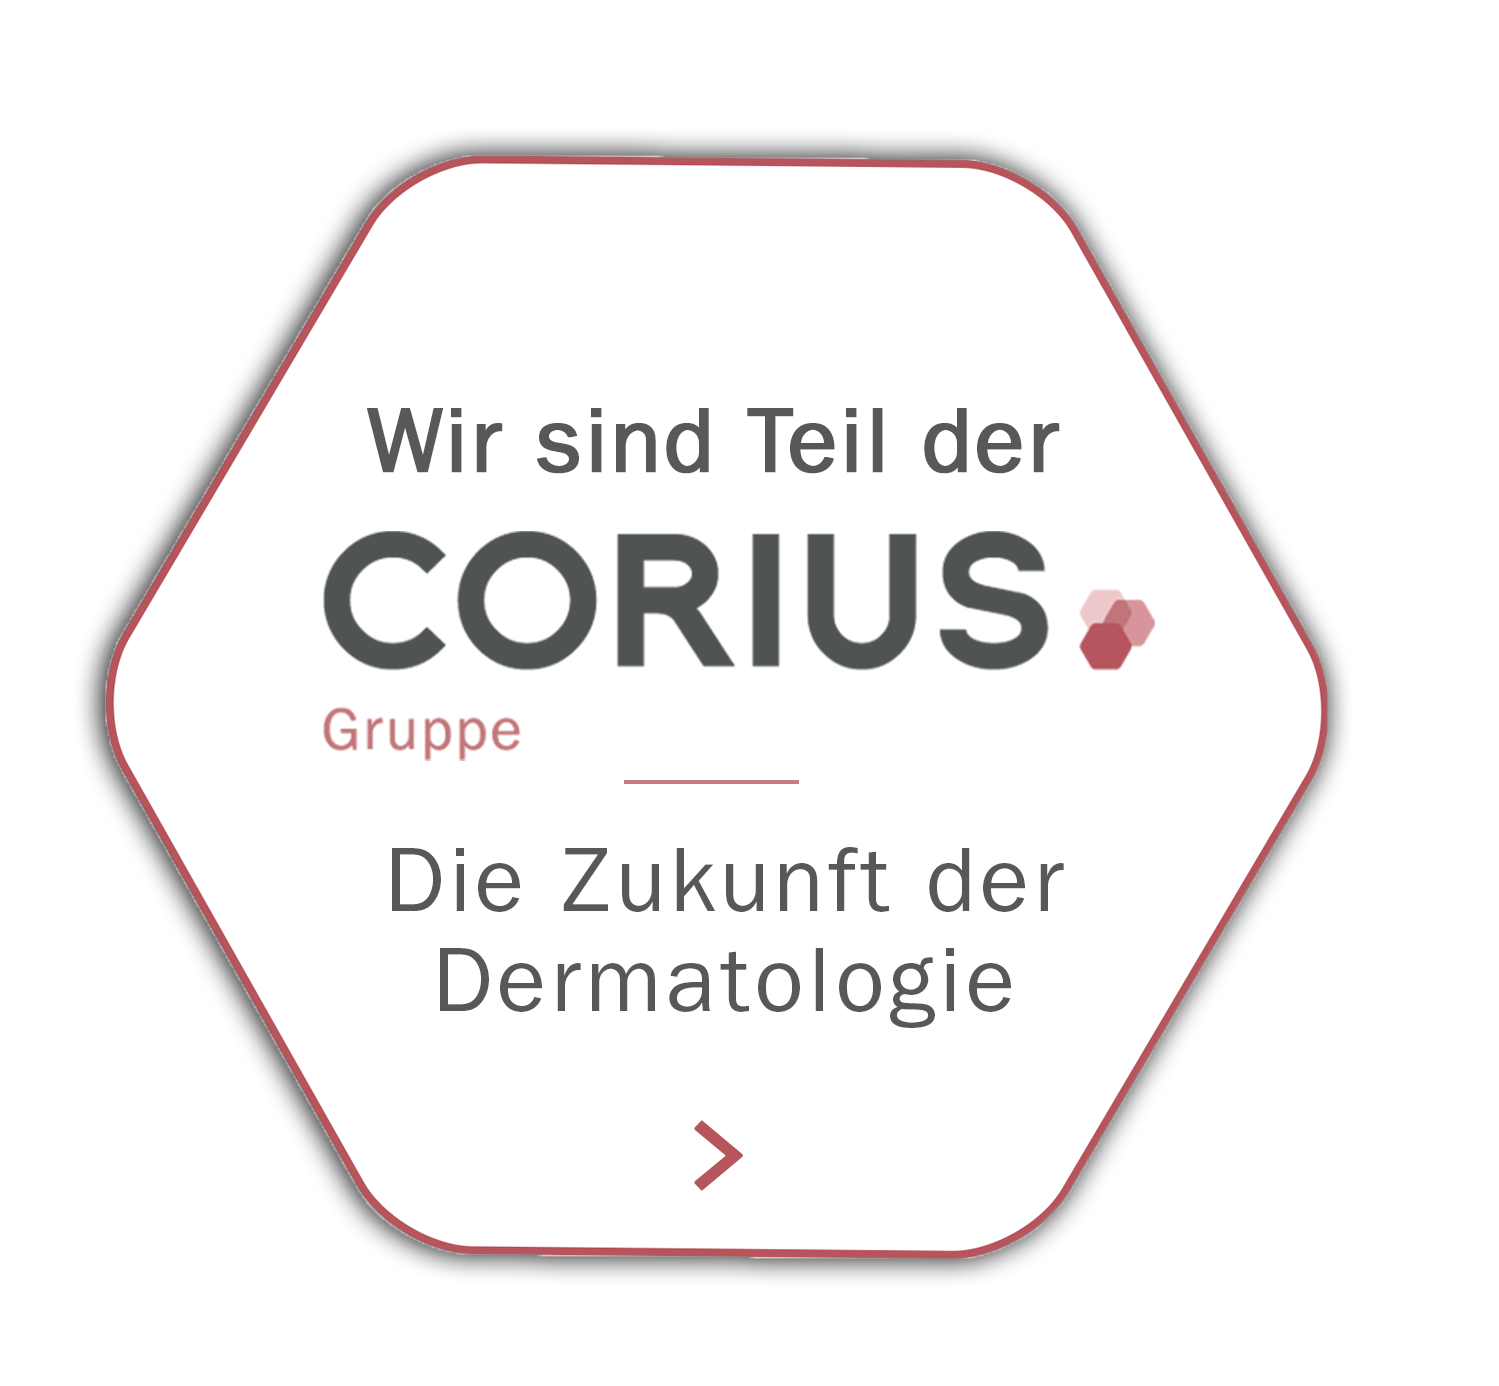 Corius Gruppe